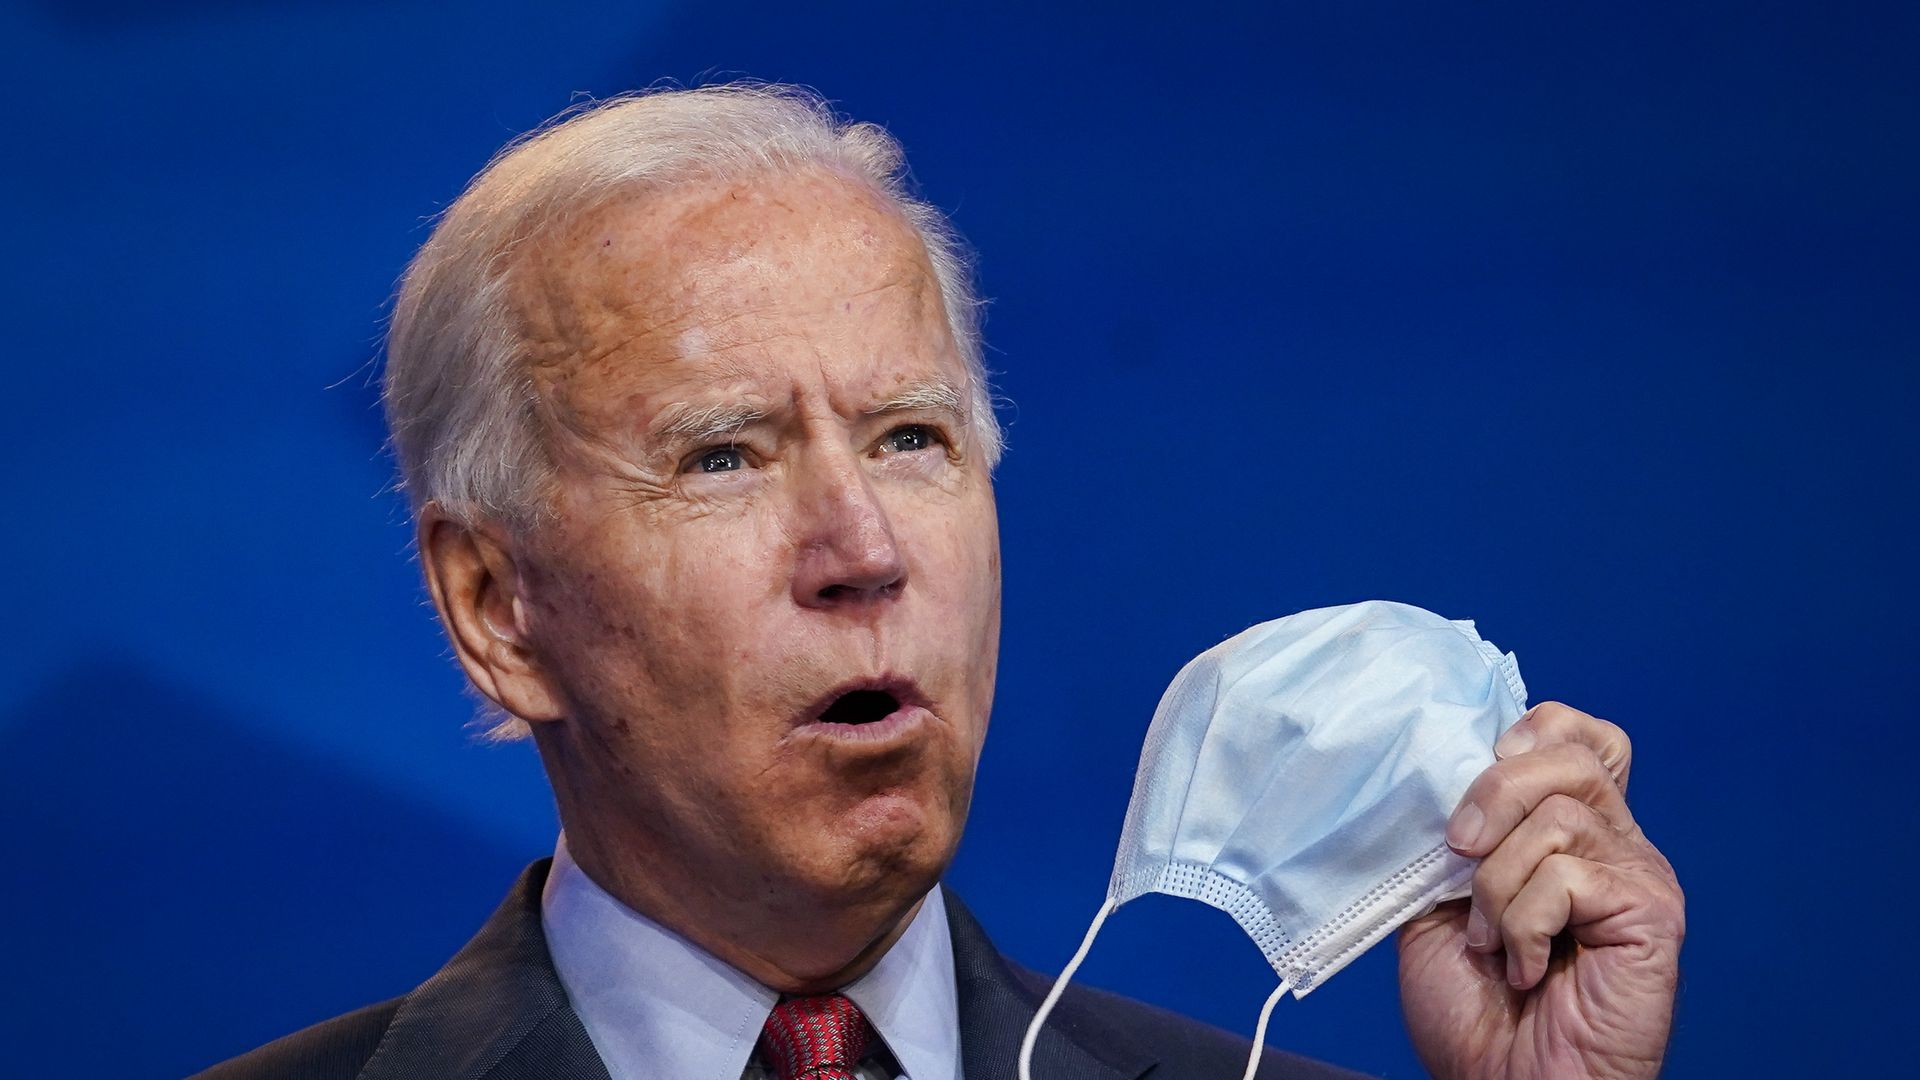 Biden holds a mask